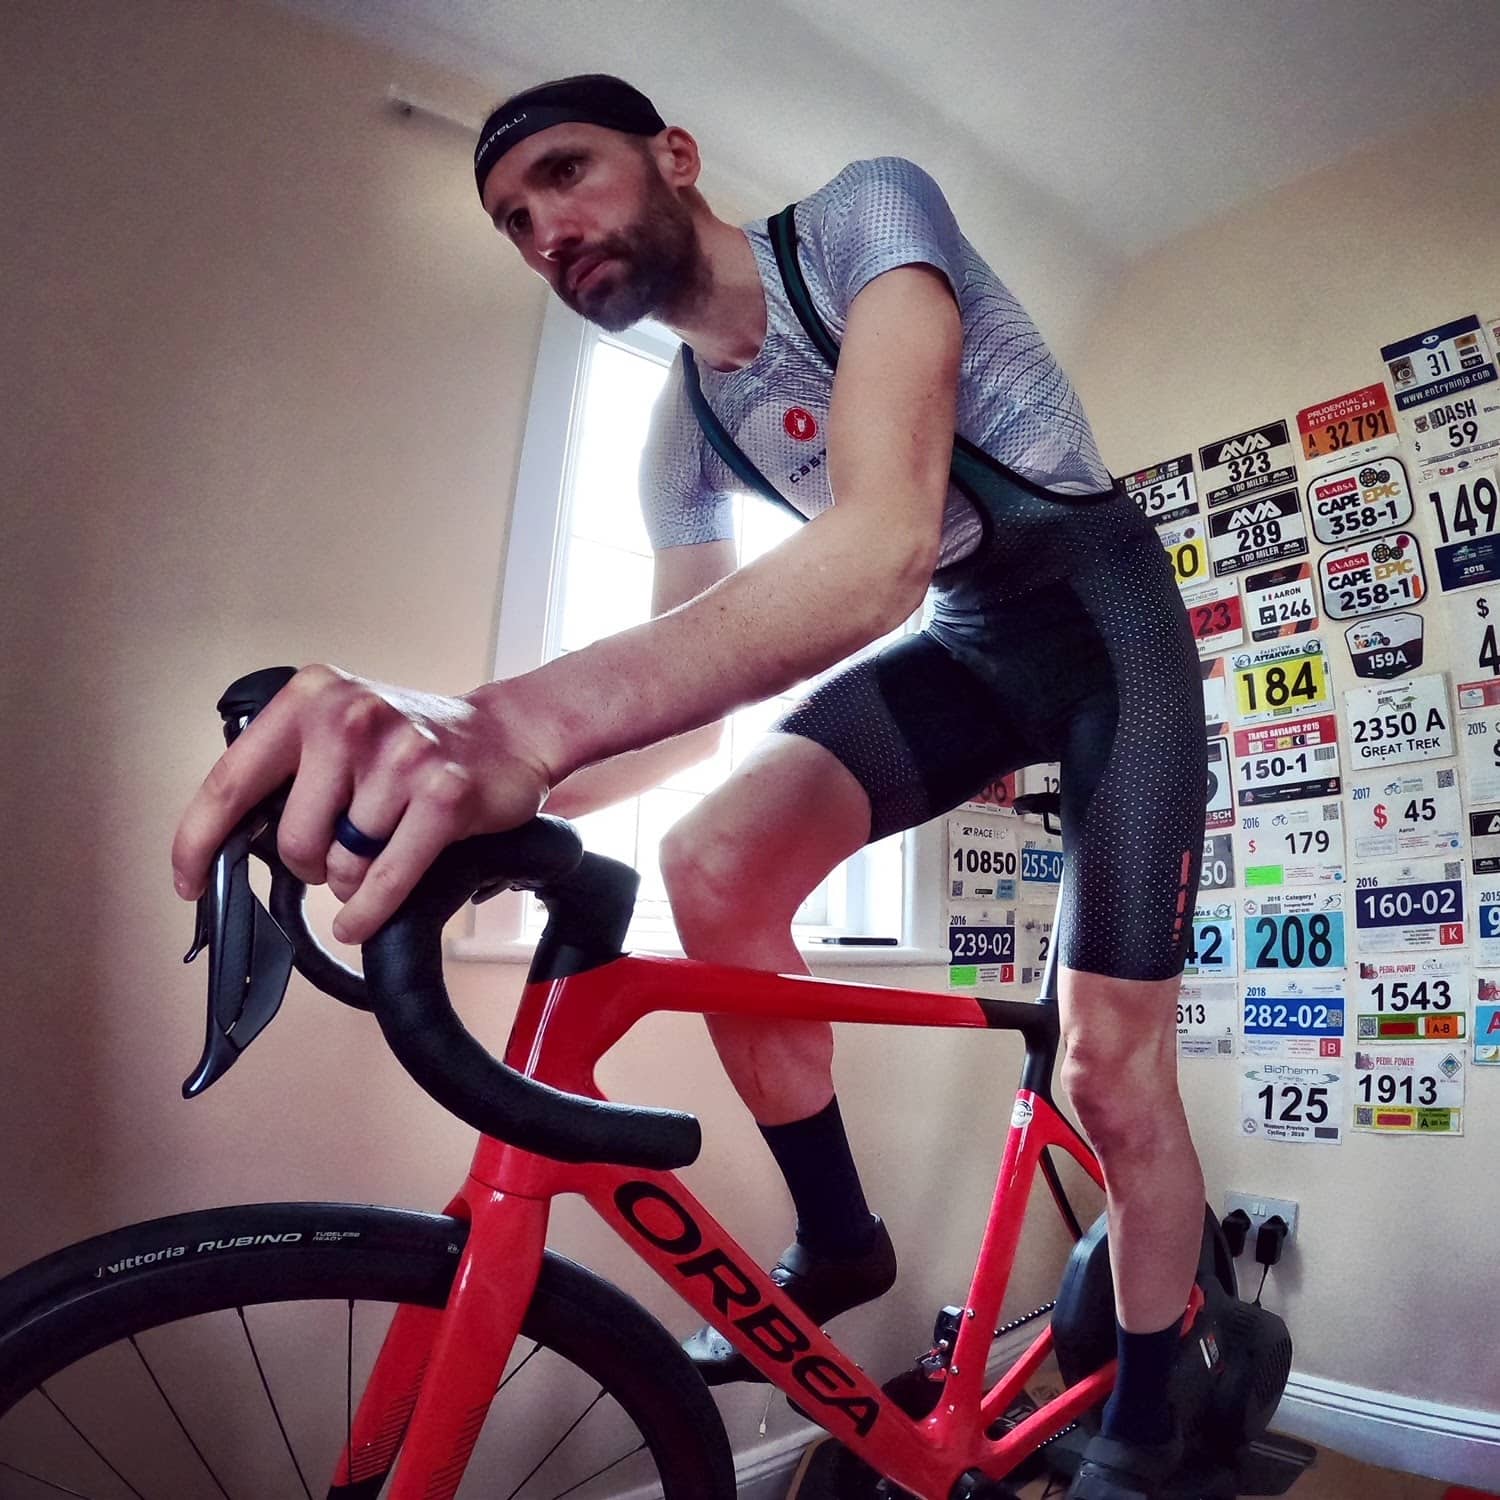 Aaron Borrill riding bike indoors